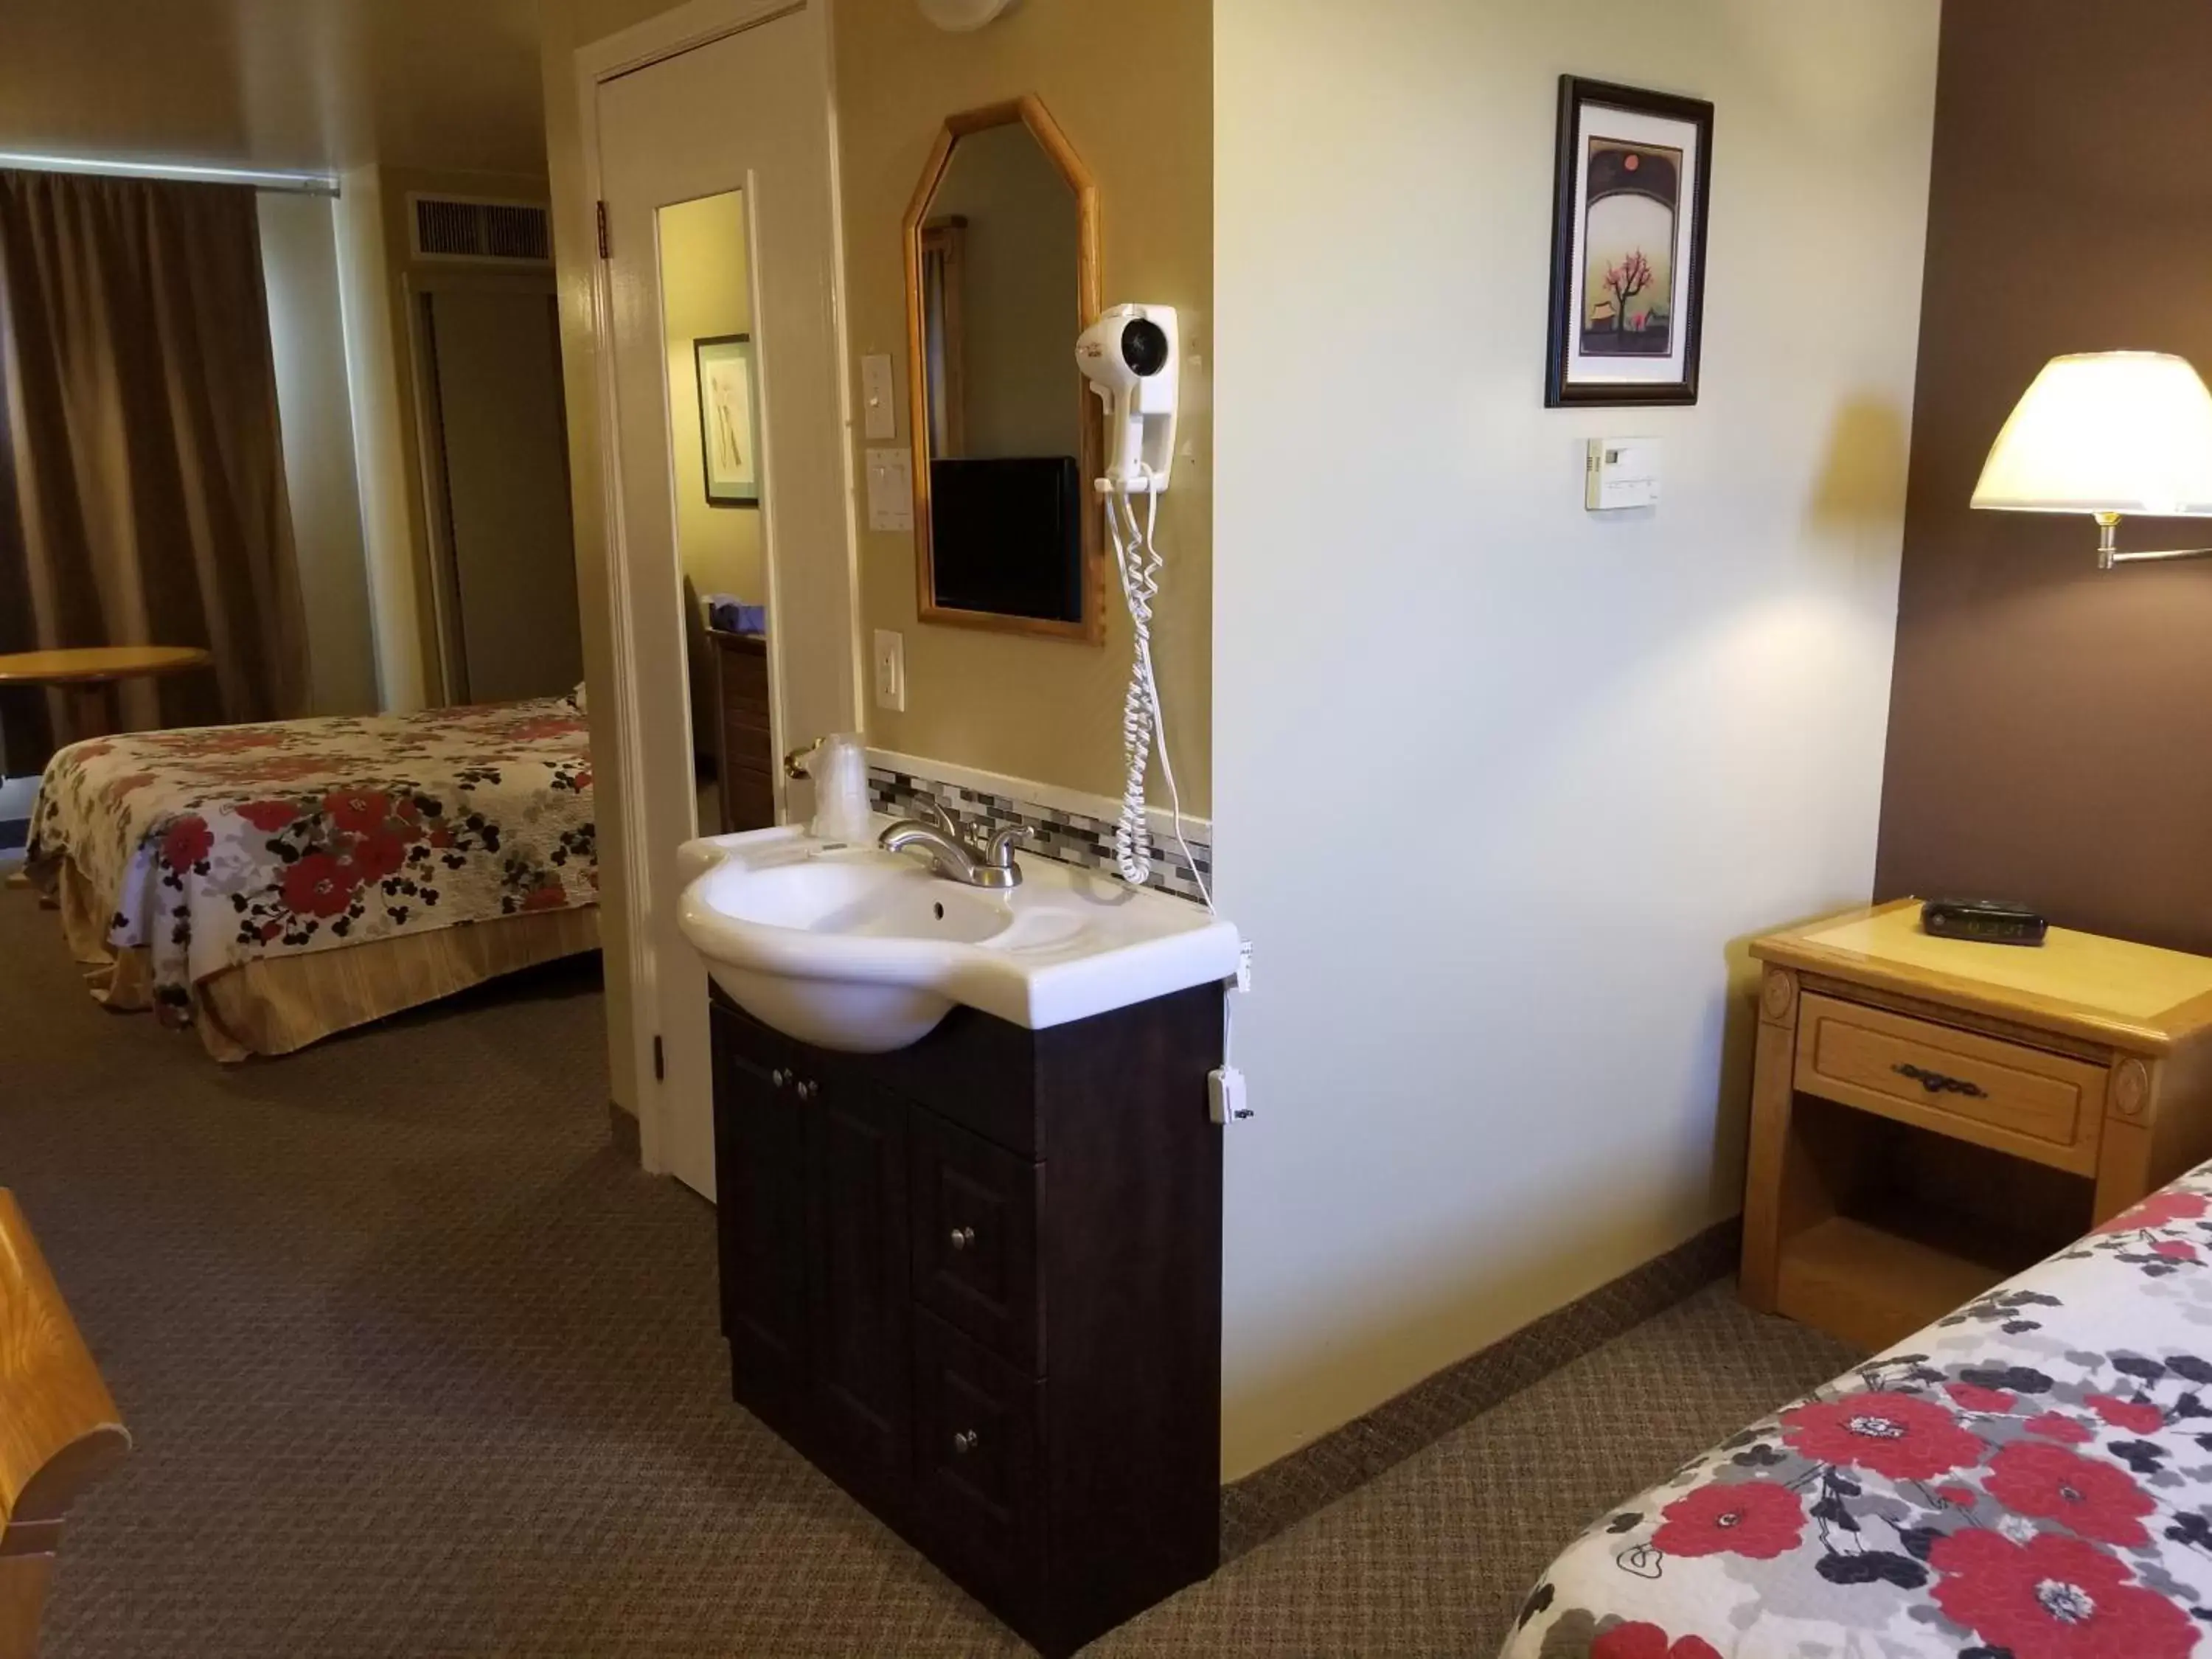 Bedroom, Bathroom in Knights Inn Woodstock